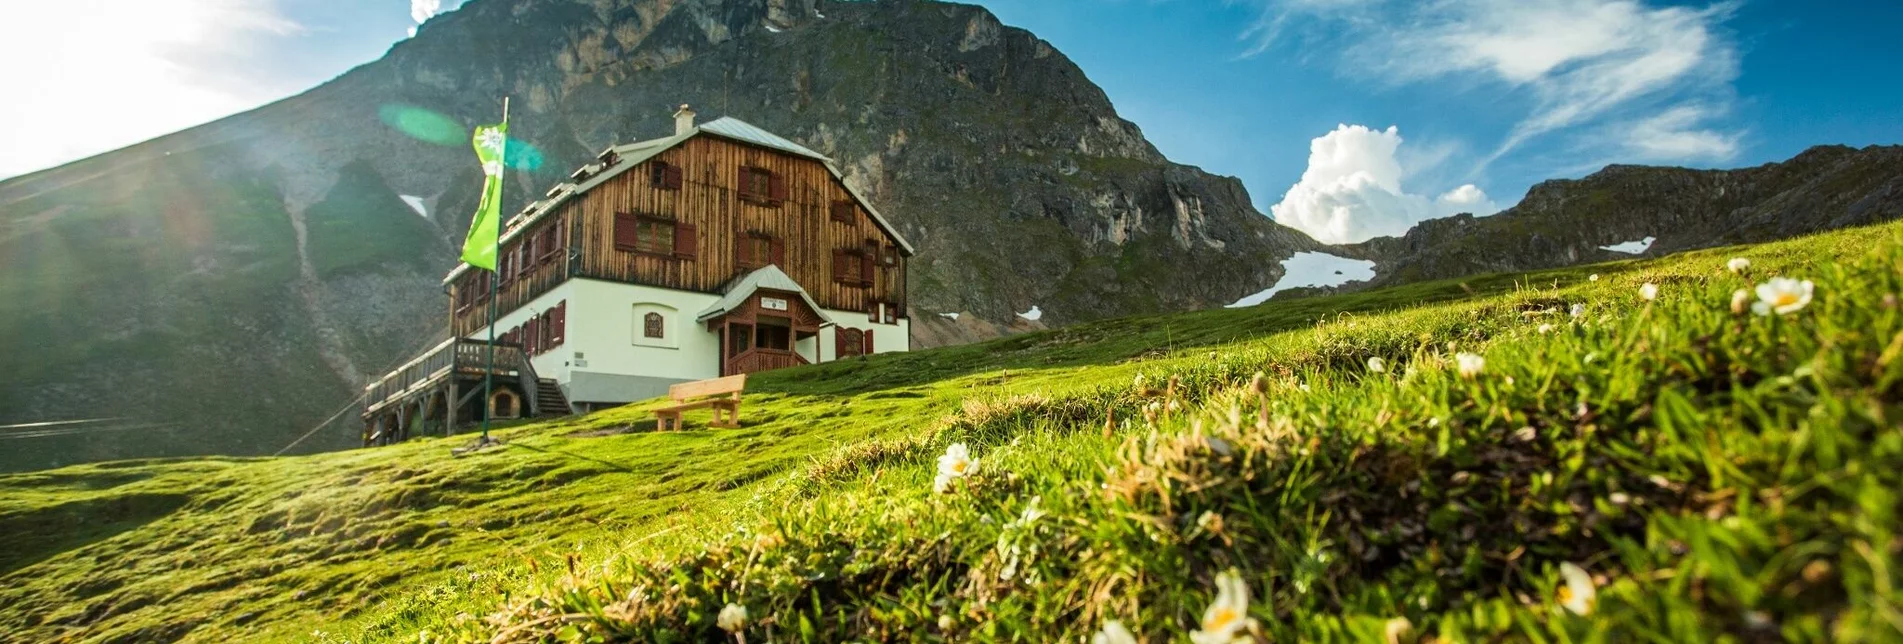 Klettersteig Eselstein Westgrat Klettersteig - Touren-Impression #1 | © Alpenverein Austria